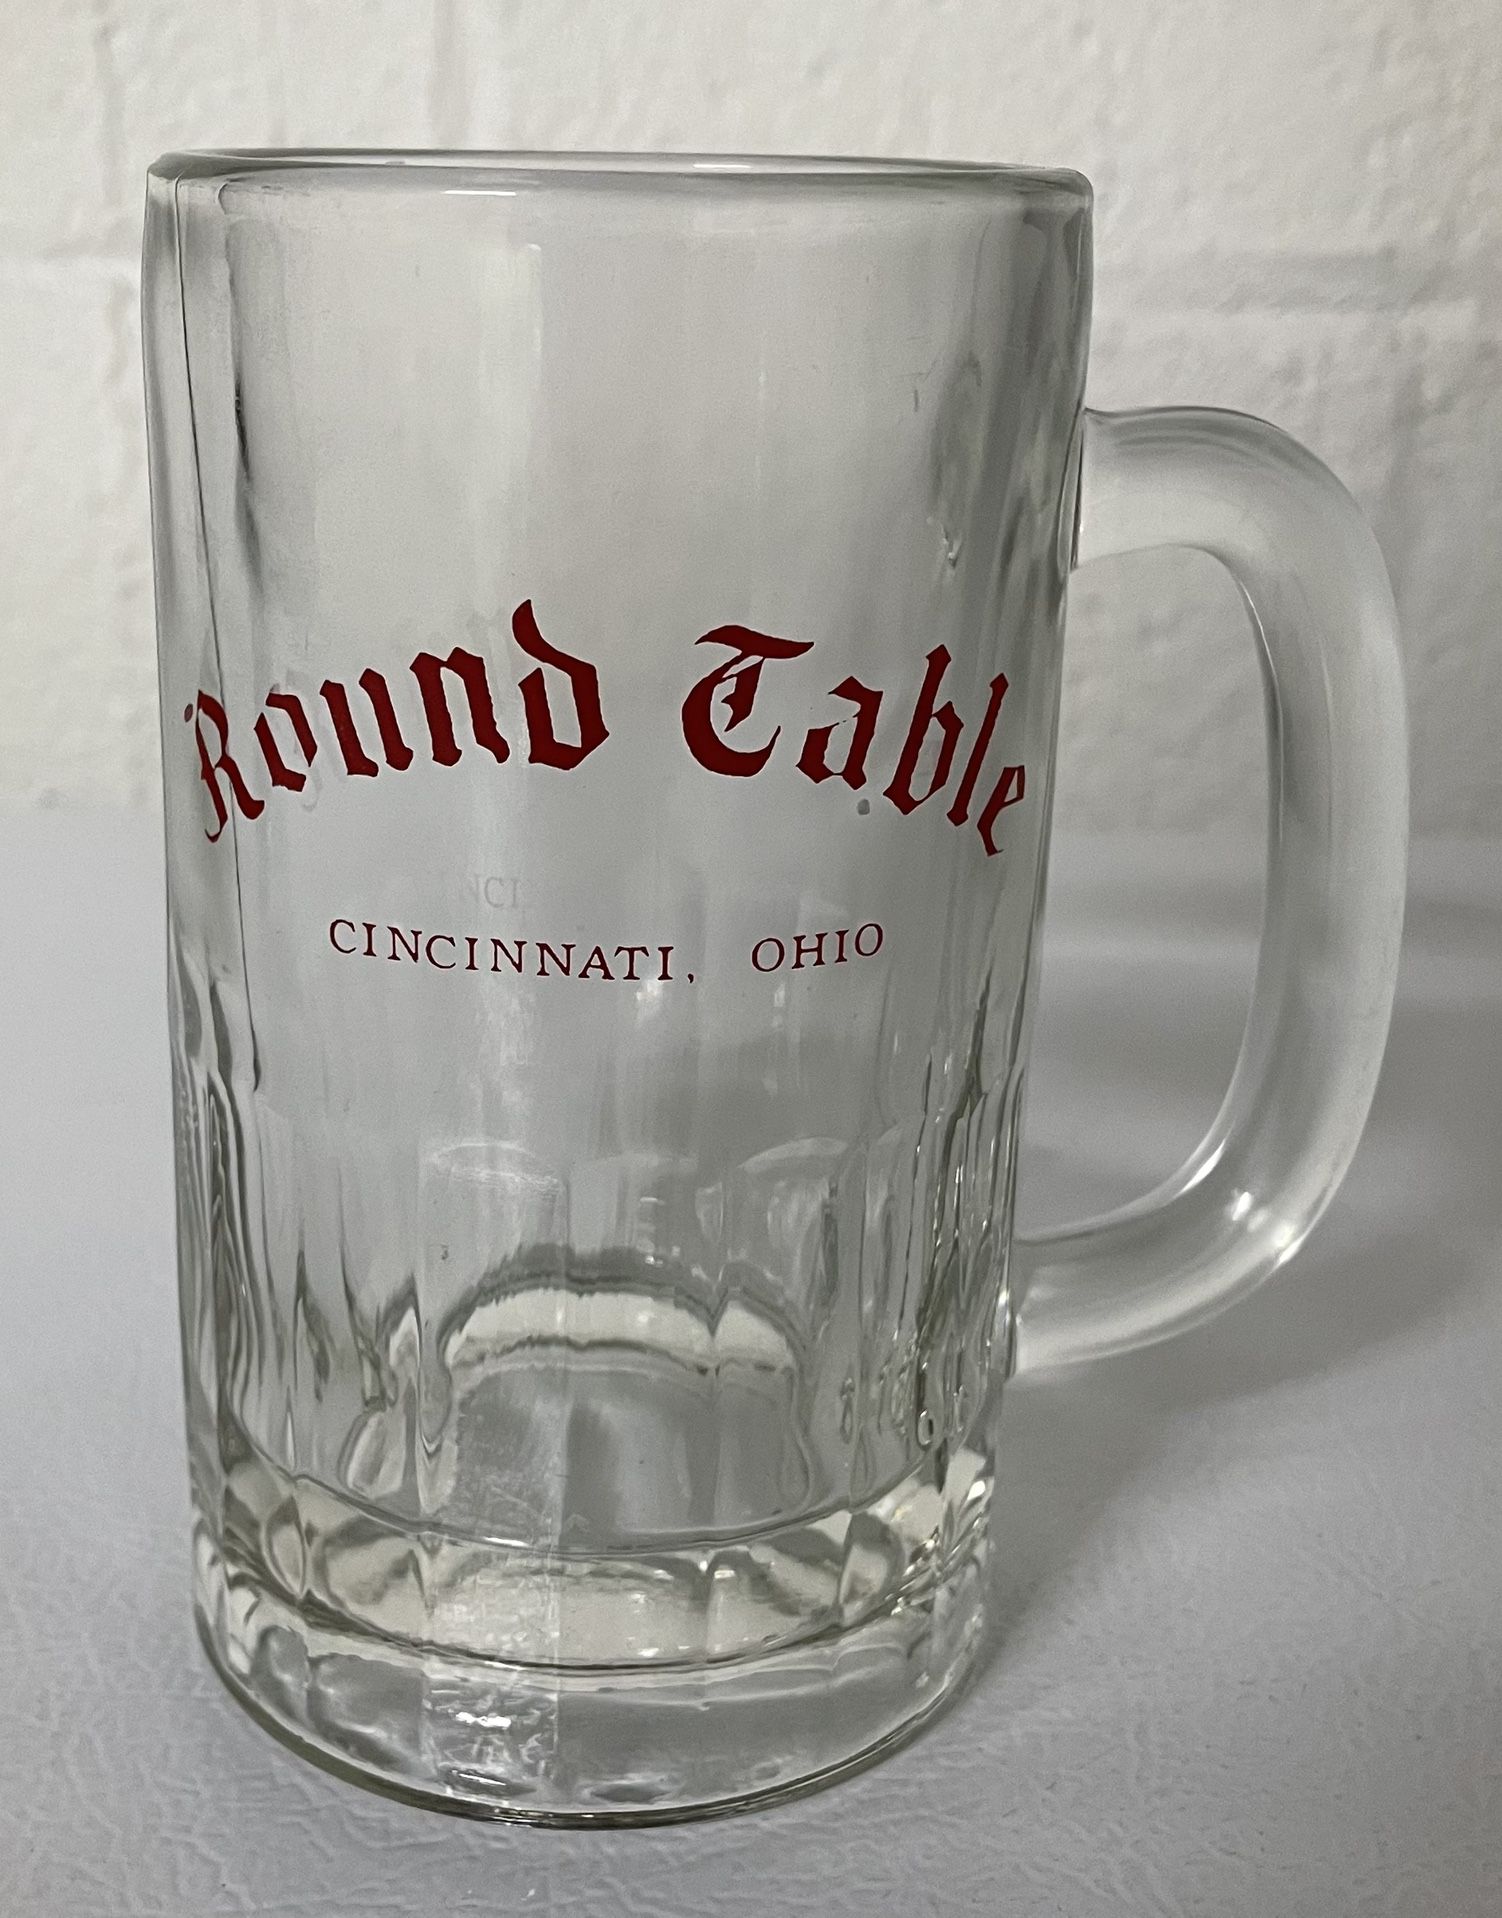 Round Table Cincinnati Ohio Historic Bar Glass Beer Mug Vintage